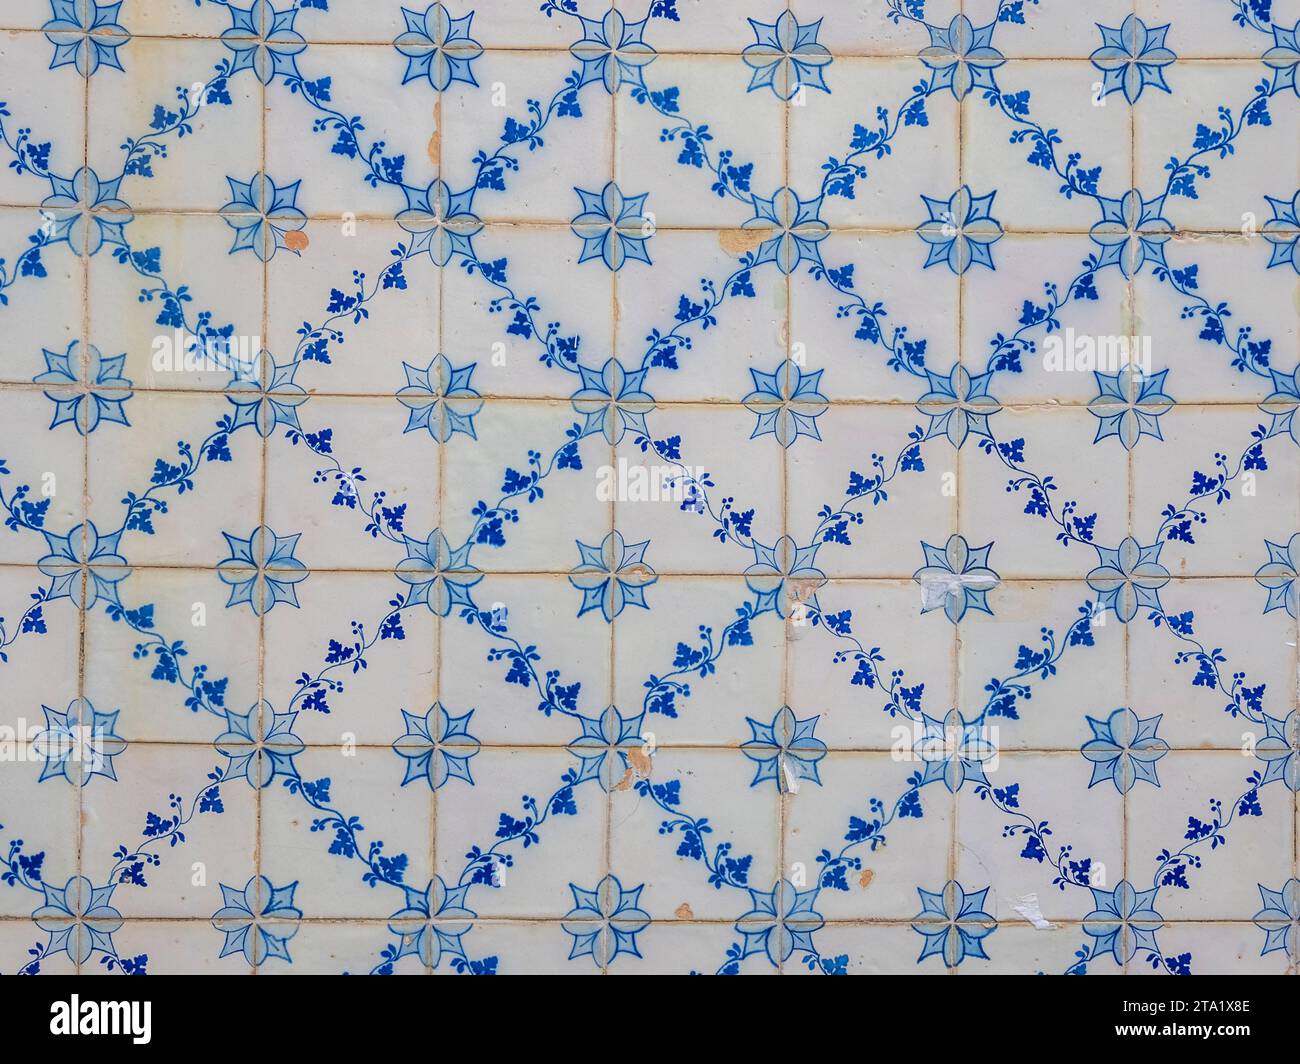 Fond plein cadre de carreaux de céramique portugais dans des couleurs bleues et blanches Banque D'Images